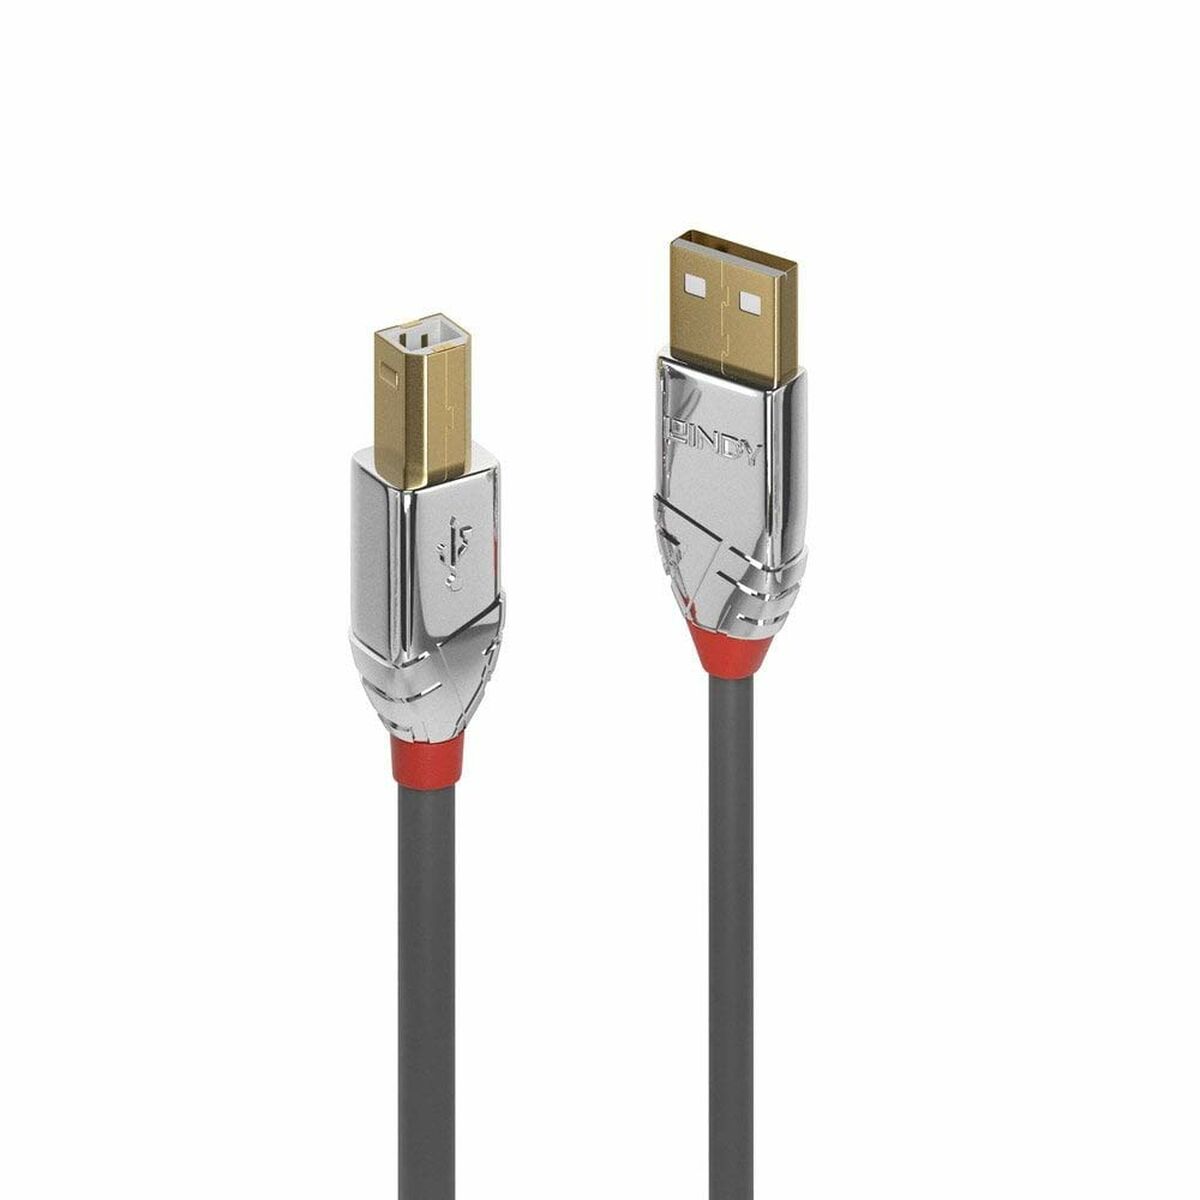 Osta tuote Kaapeli Micro USB LINDY 36644 Harmaa verkkokaupastamme Korhone: Urheilu & Vapaa-aika 20% alennuksella koodilla VIIKONLOPPU